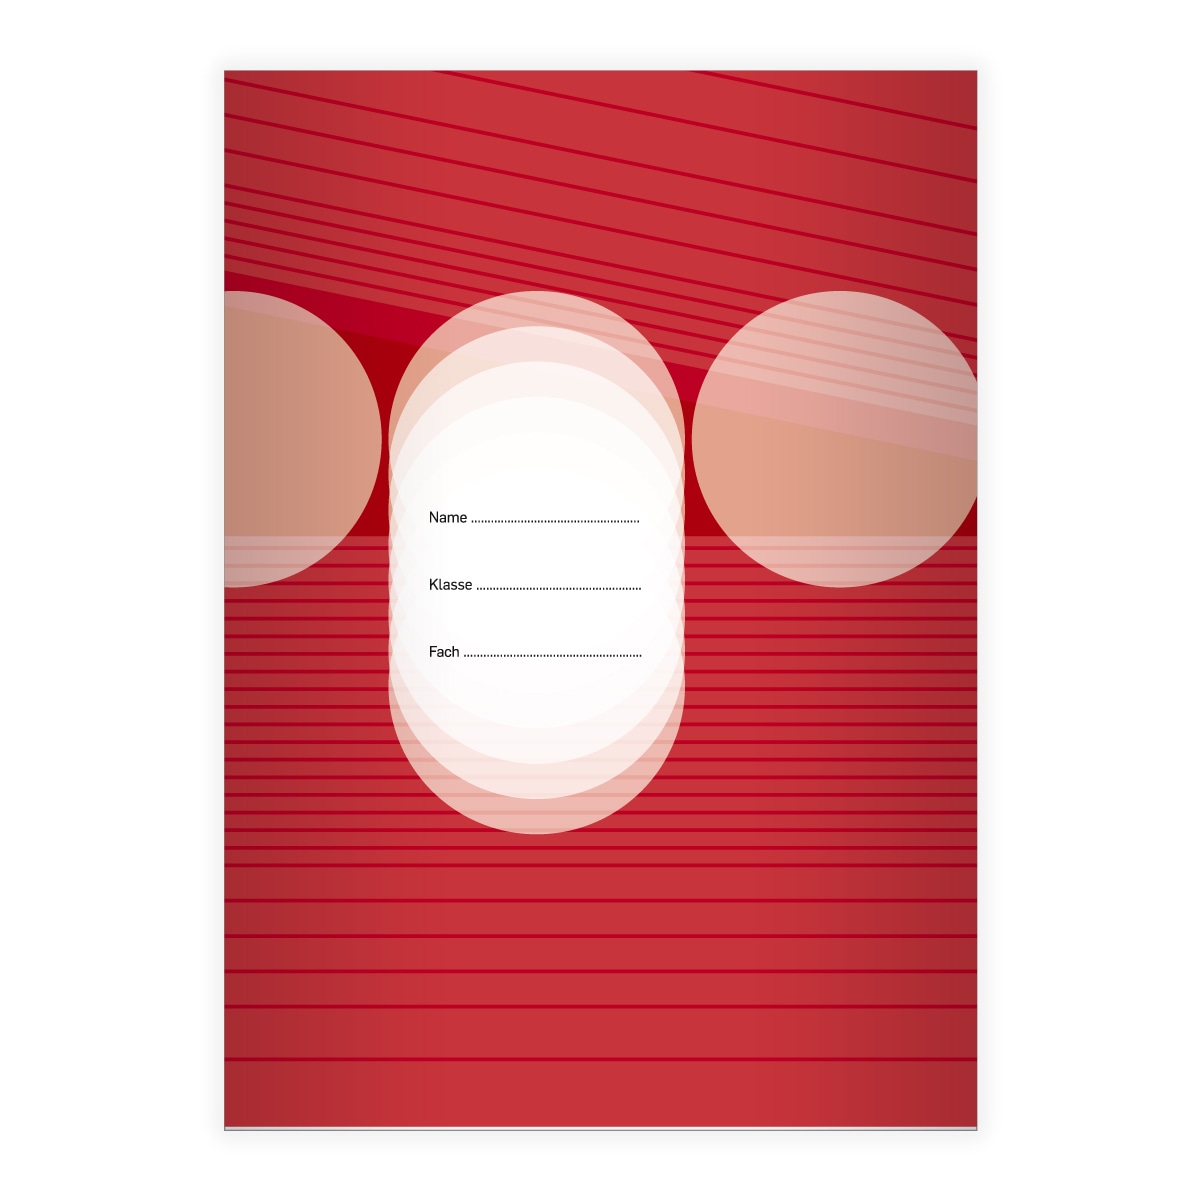 Kartenkaufrausch: Schulheft mit geometrischem Design aus unserer Schul Papeterie in rot